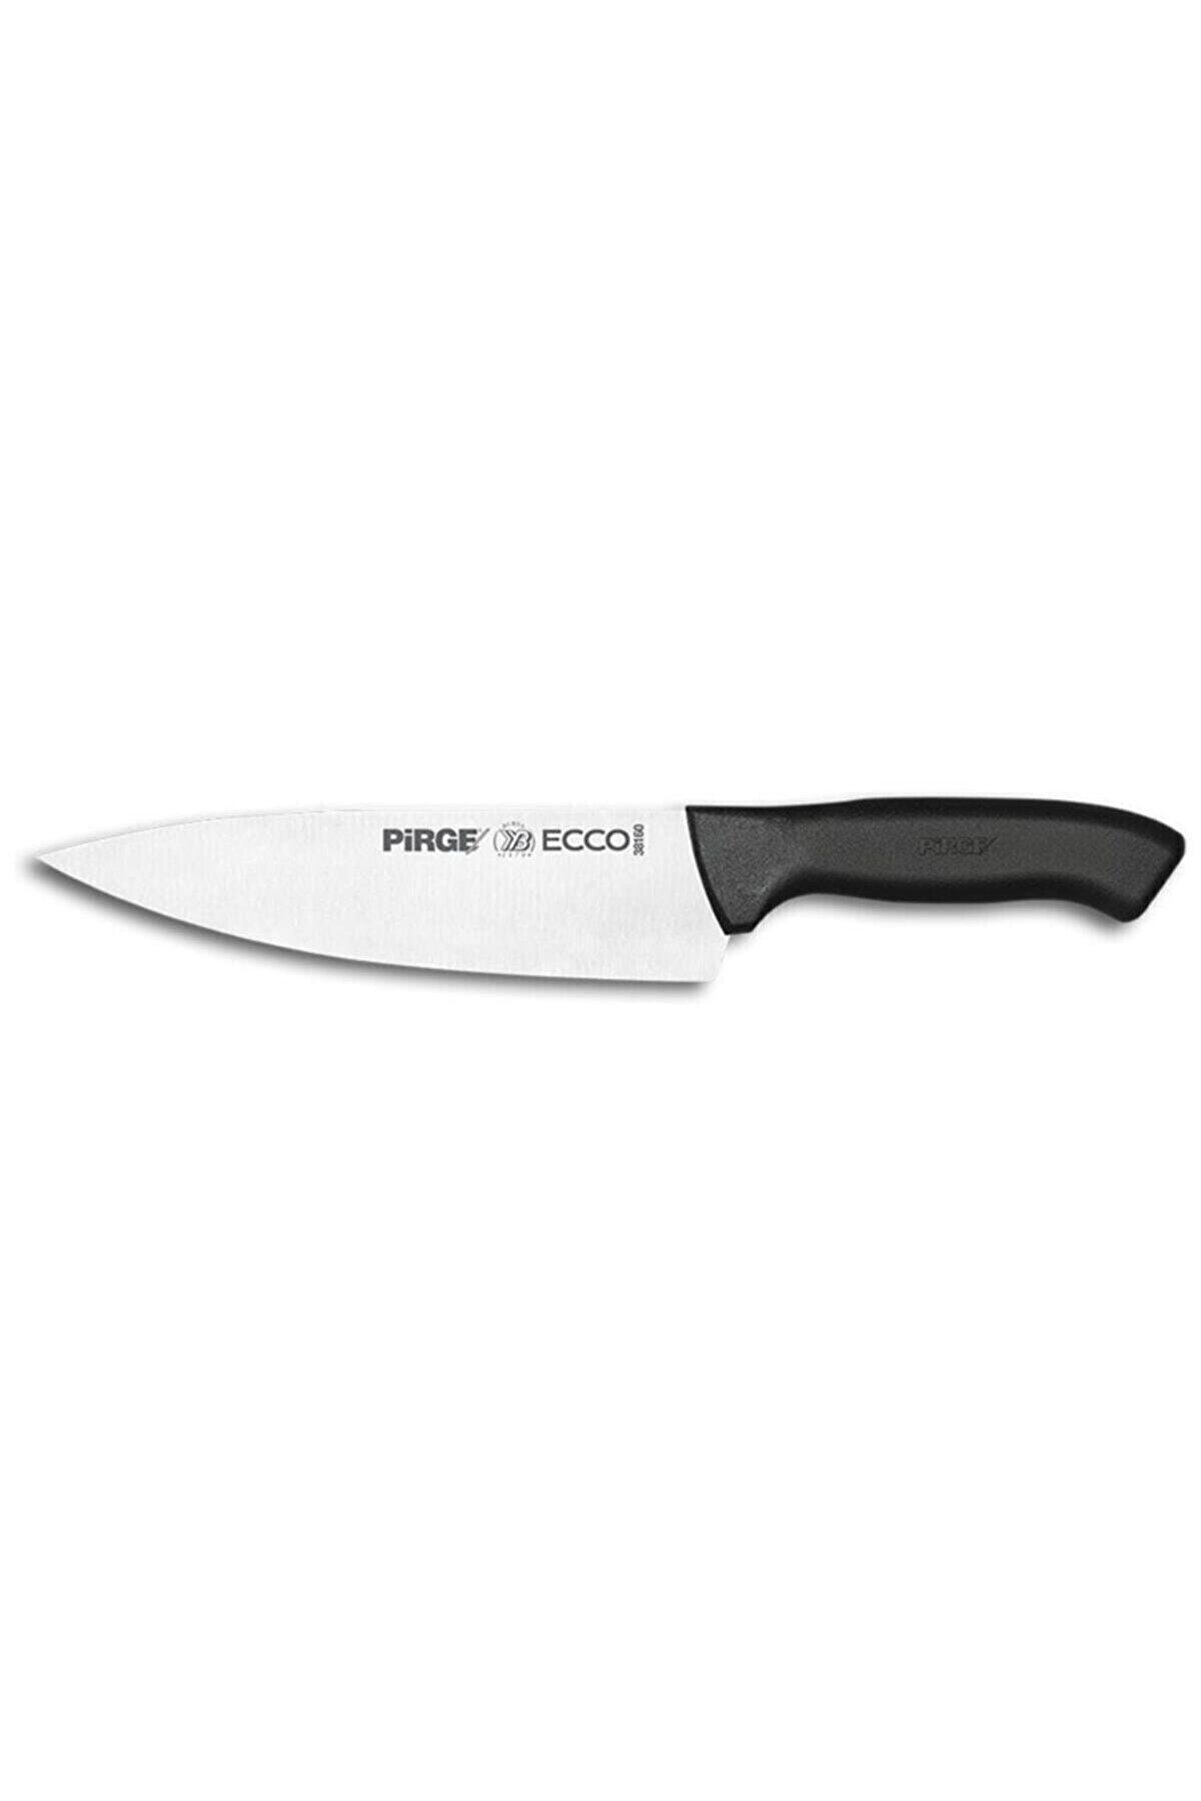 Pirge Ecco Şef Bıçağı 19 cm 38160